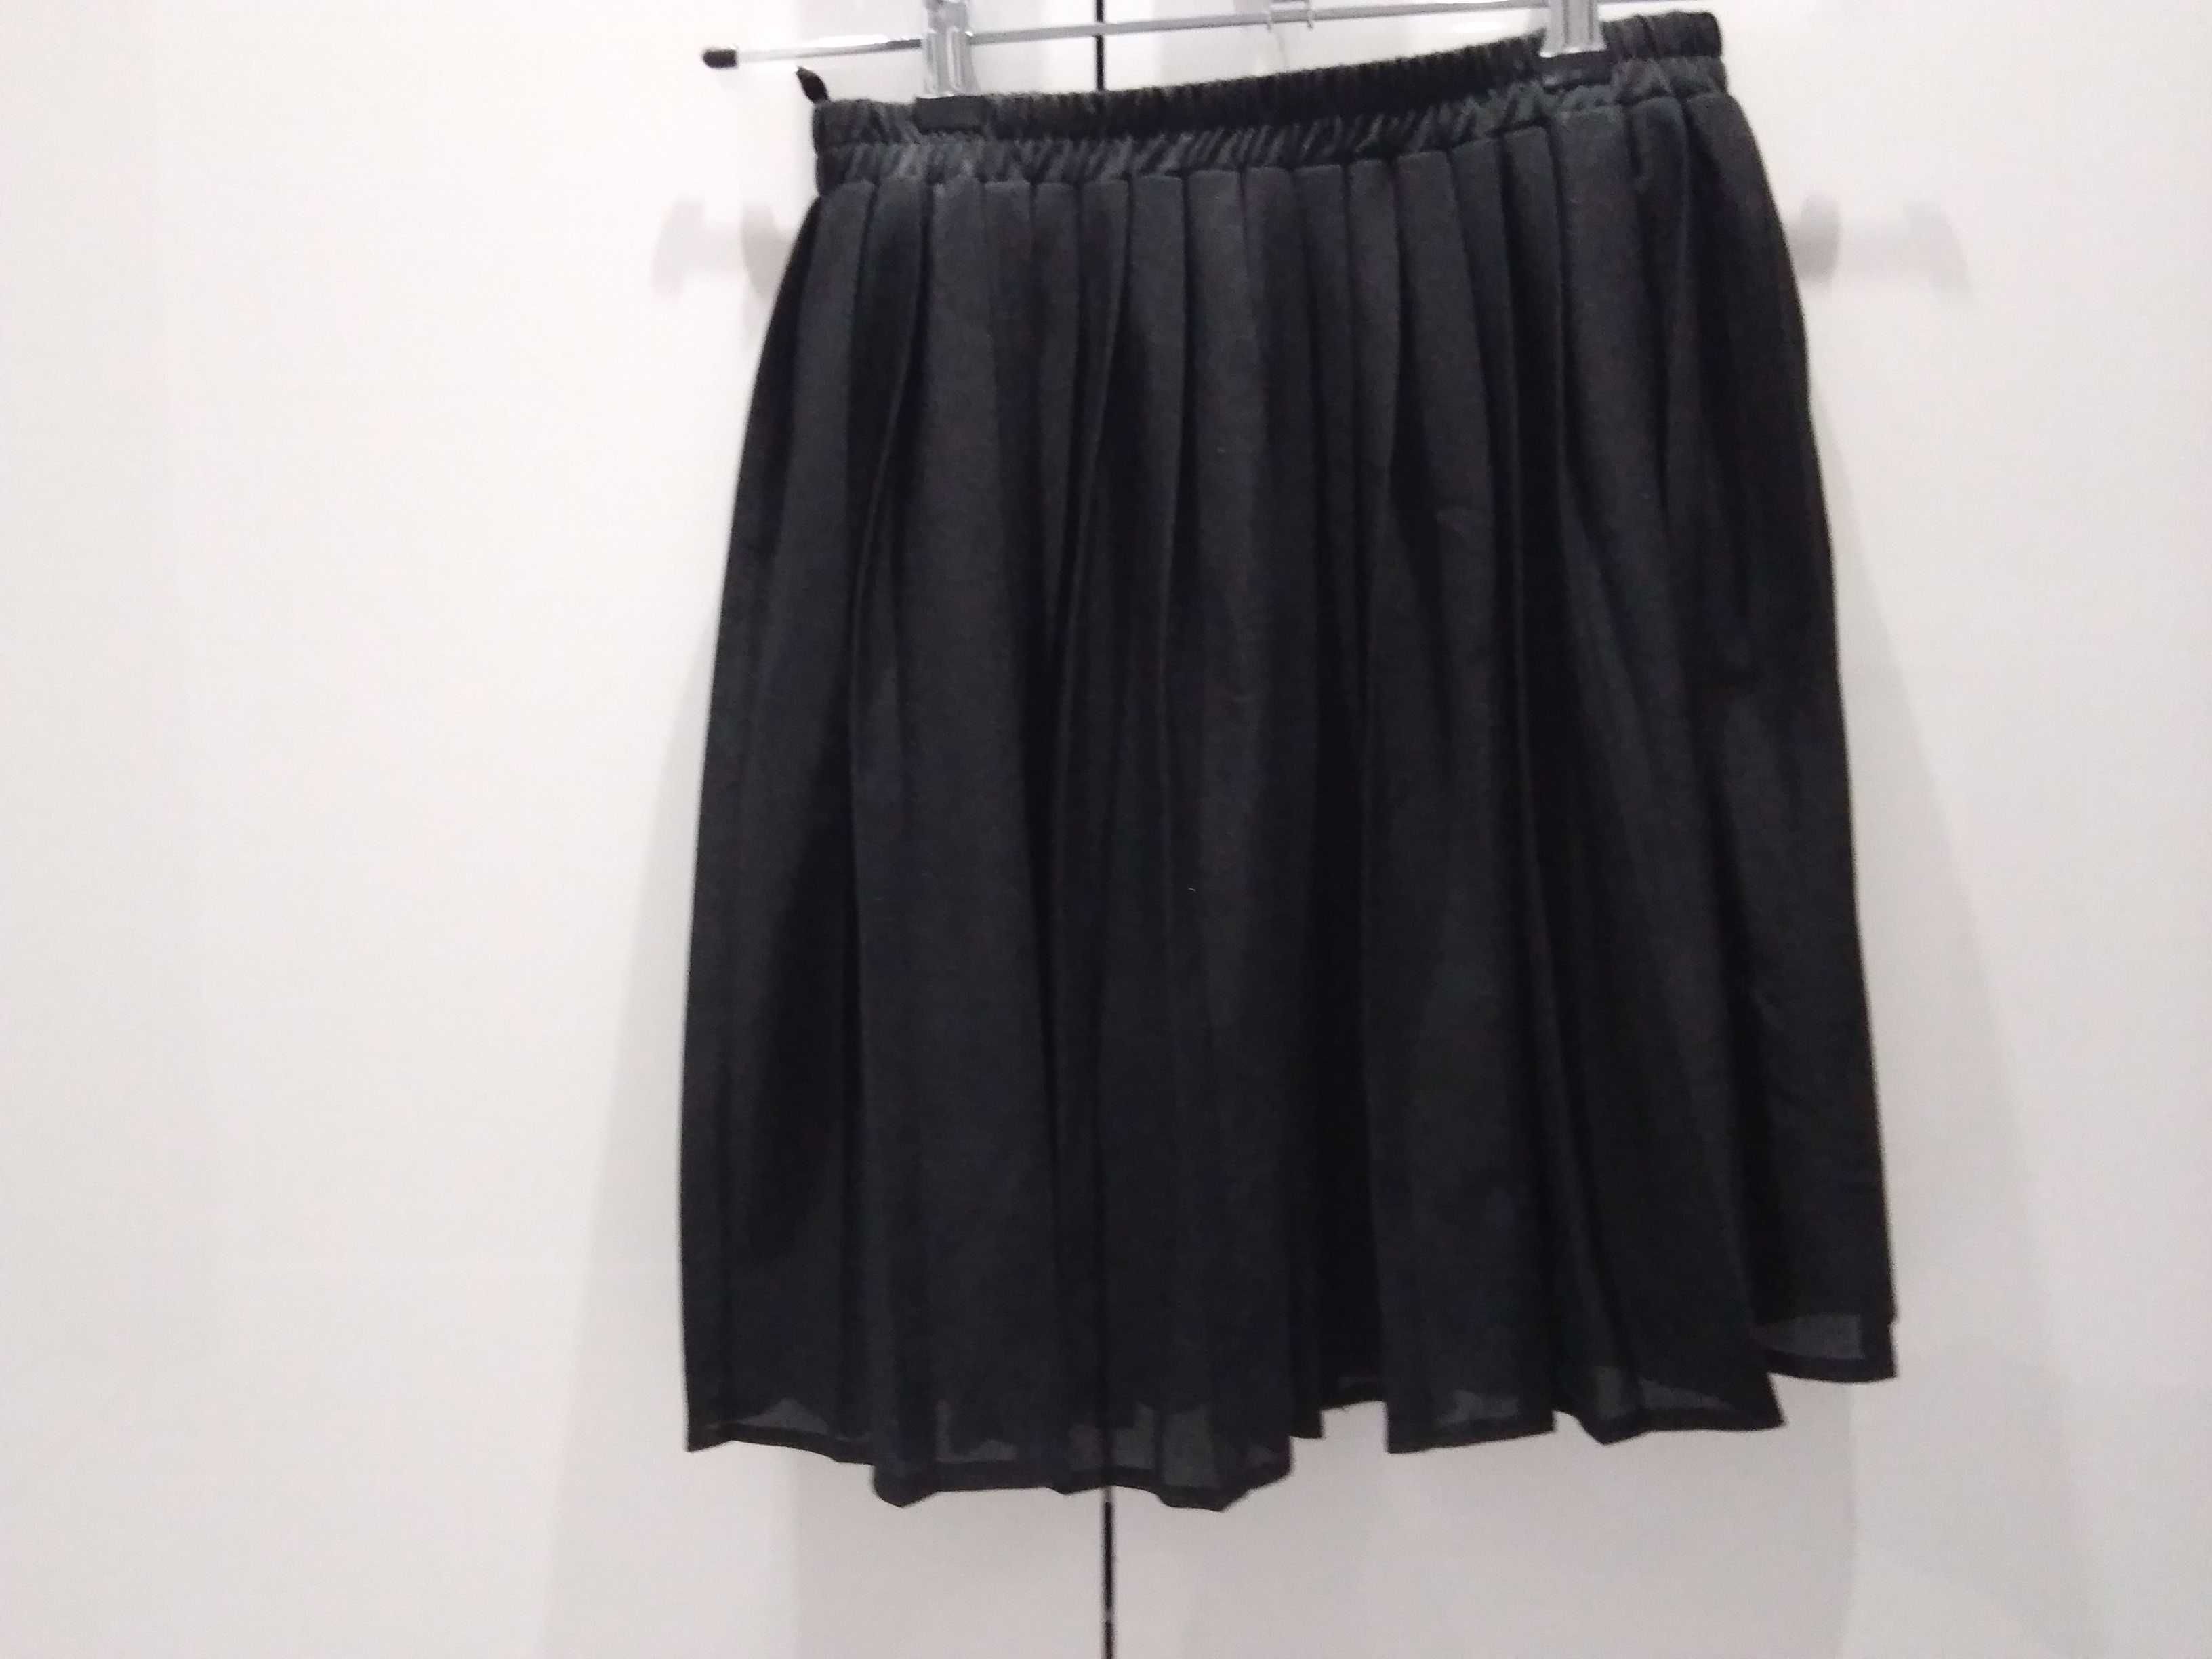 czarna krótka spódnica plisowana r.38